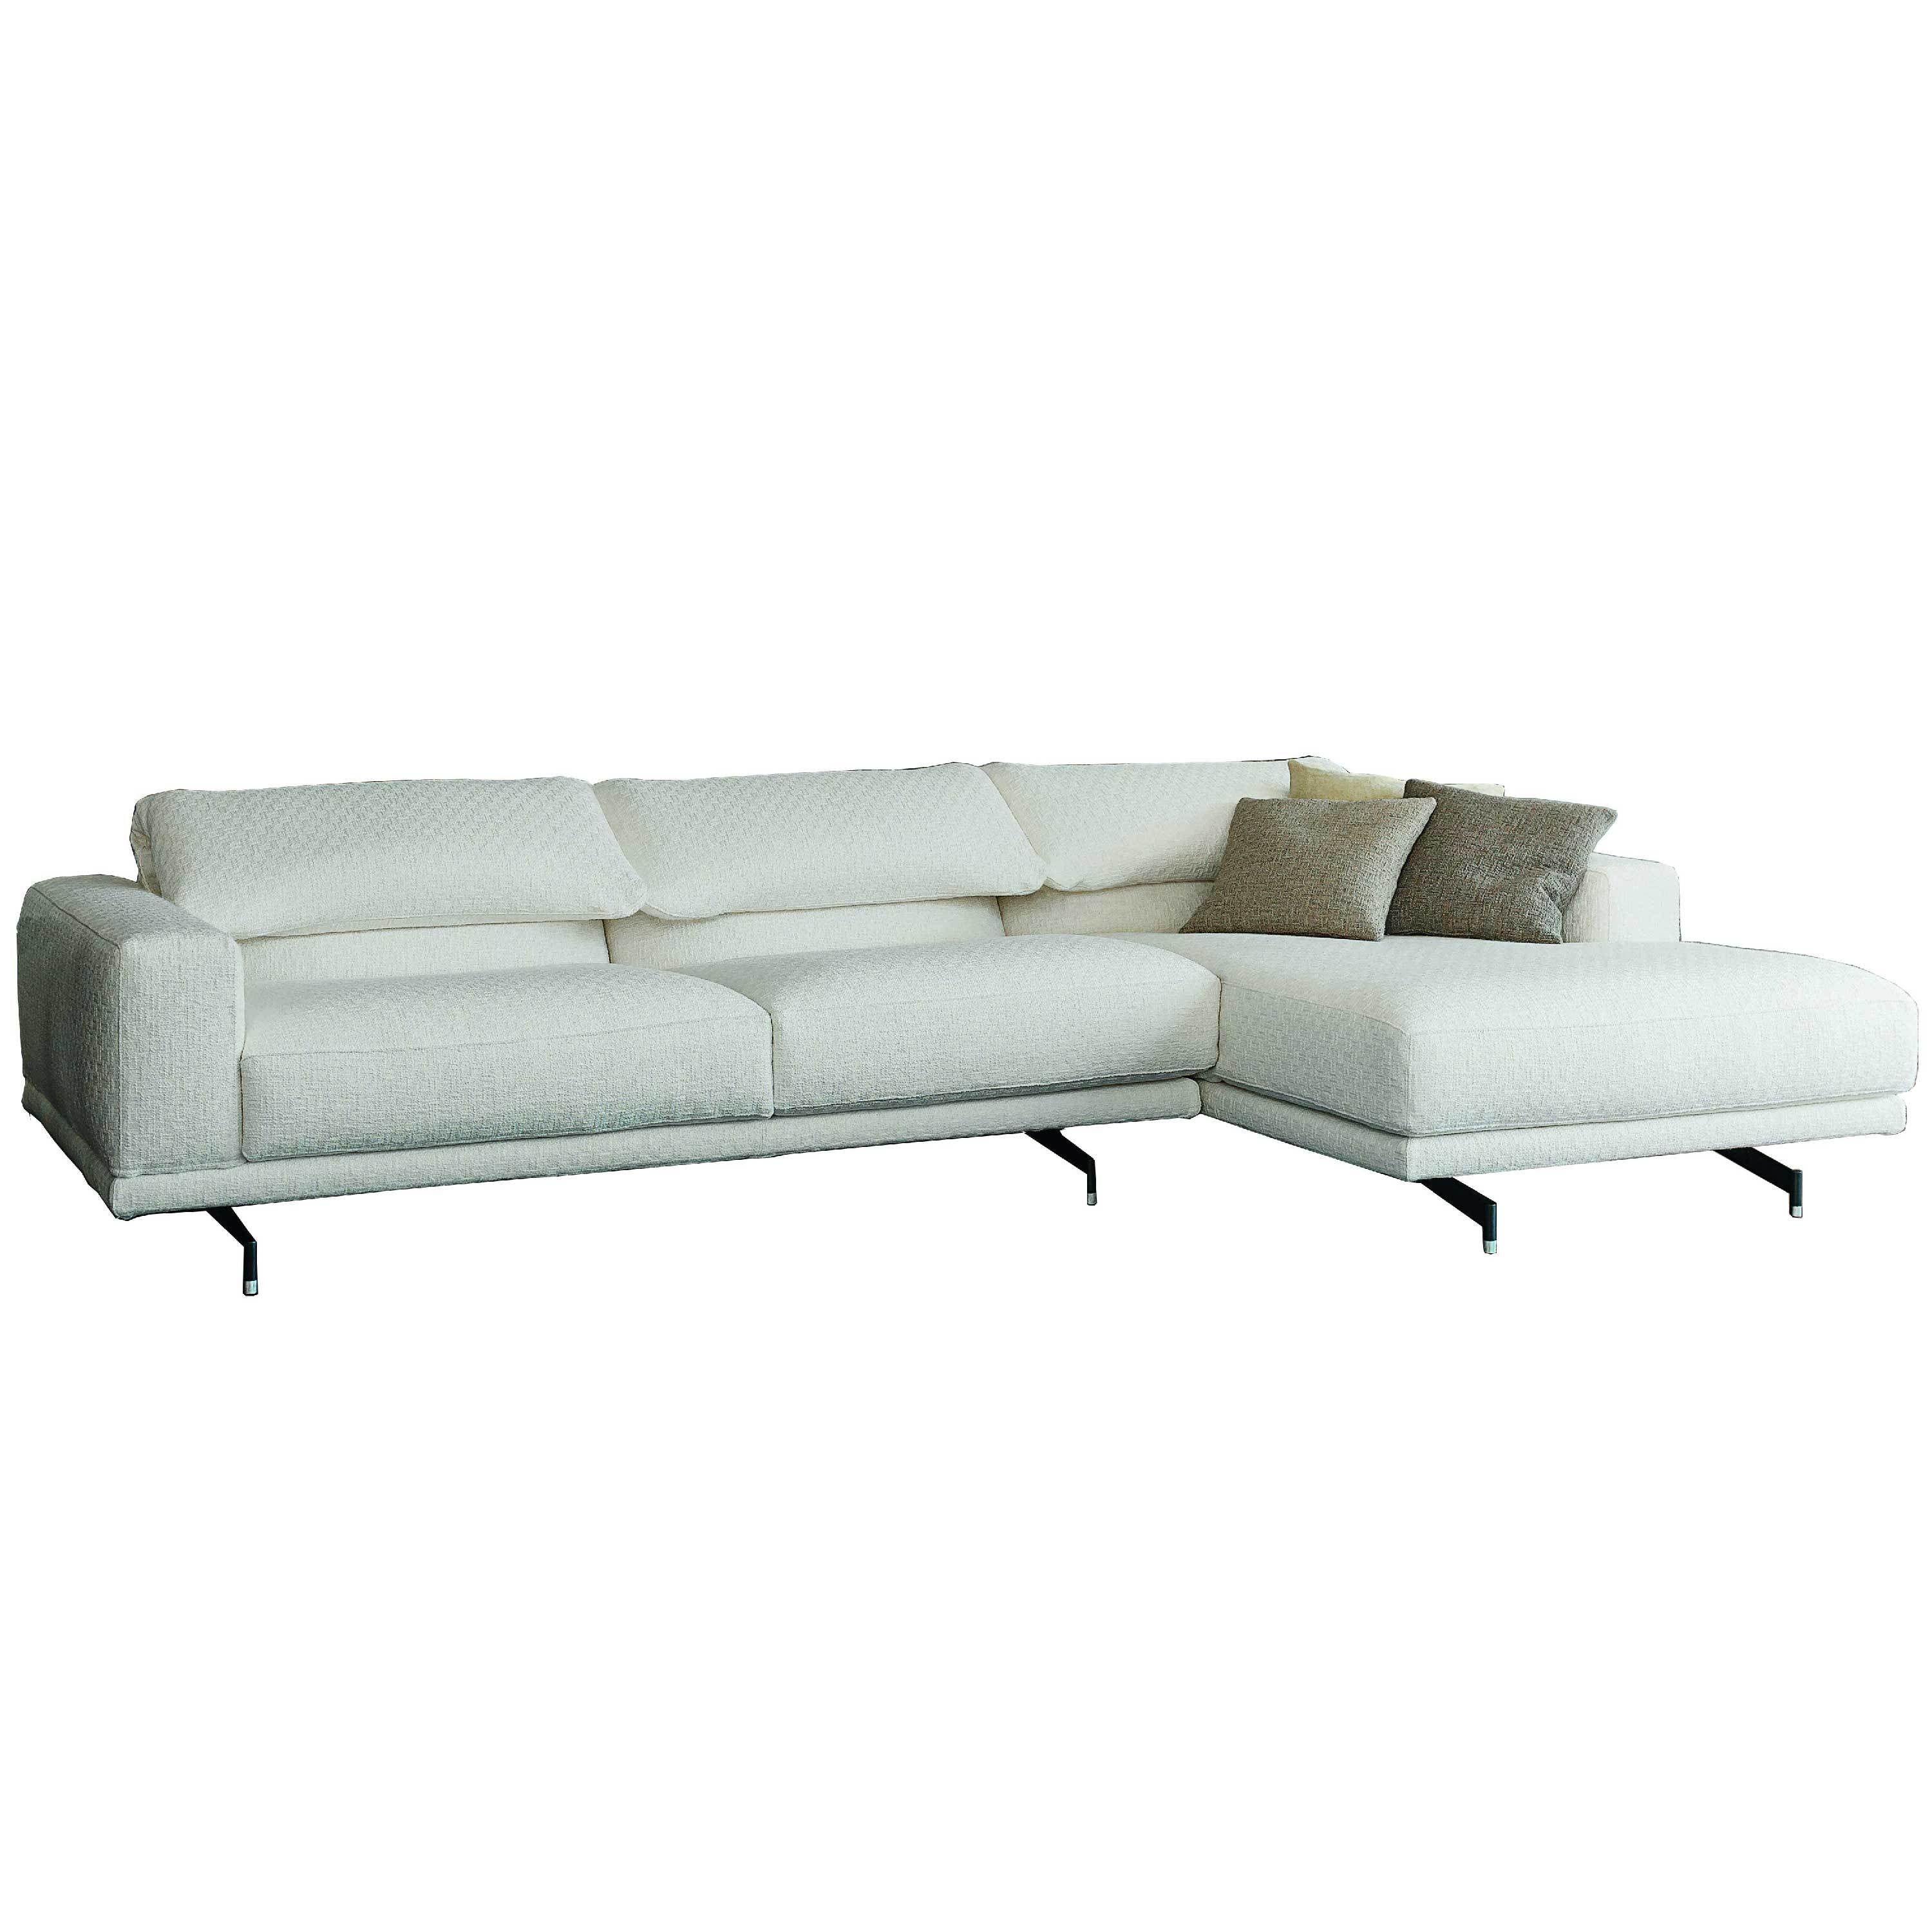 550 Altopiano Sectional Sofa